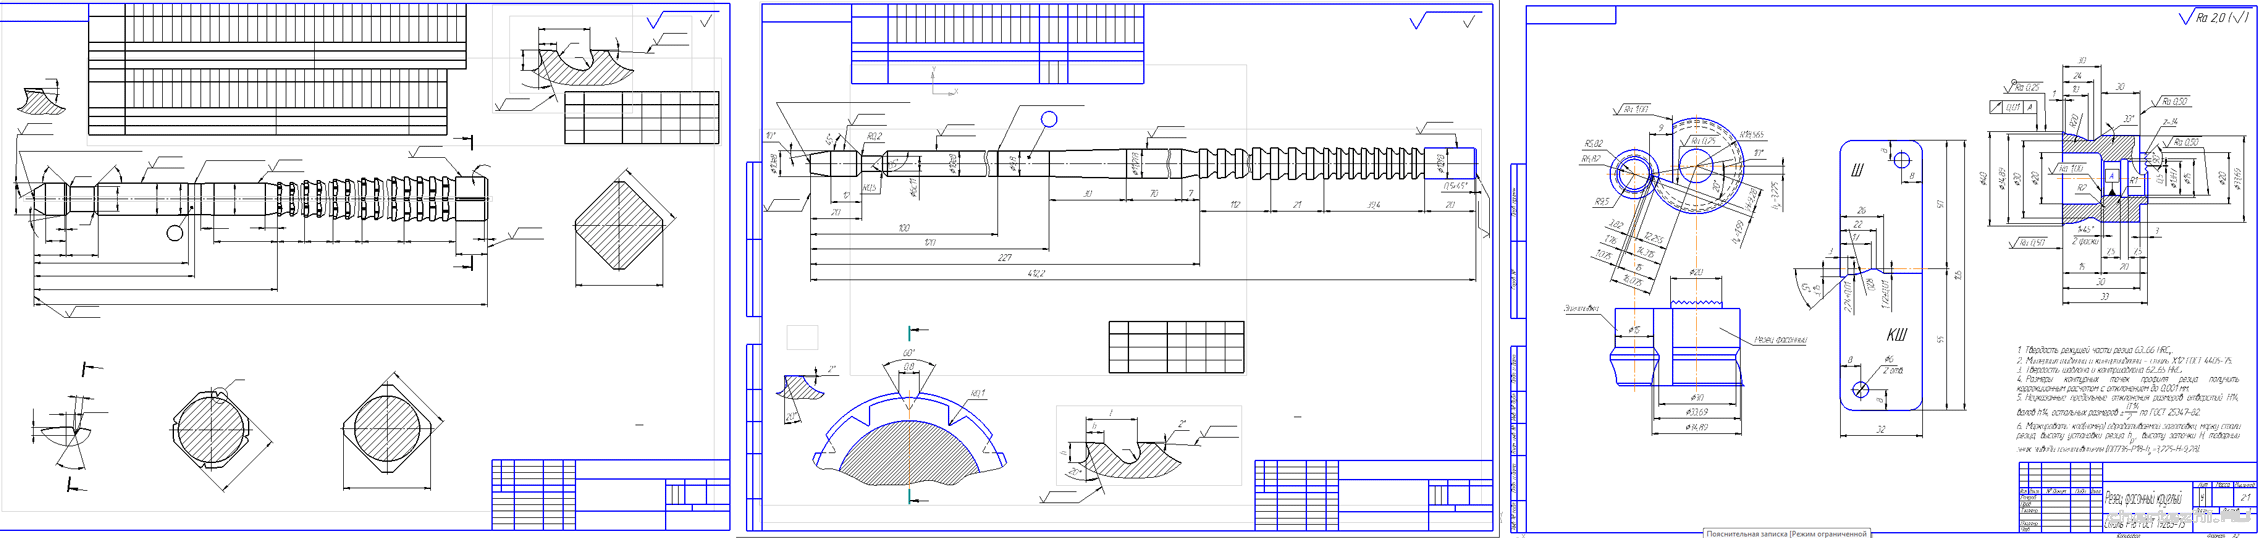 Курсовая работа - Расчет и конструирование режущего инструмента. Резец фасонный круглый / Прошивка 12 мм.